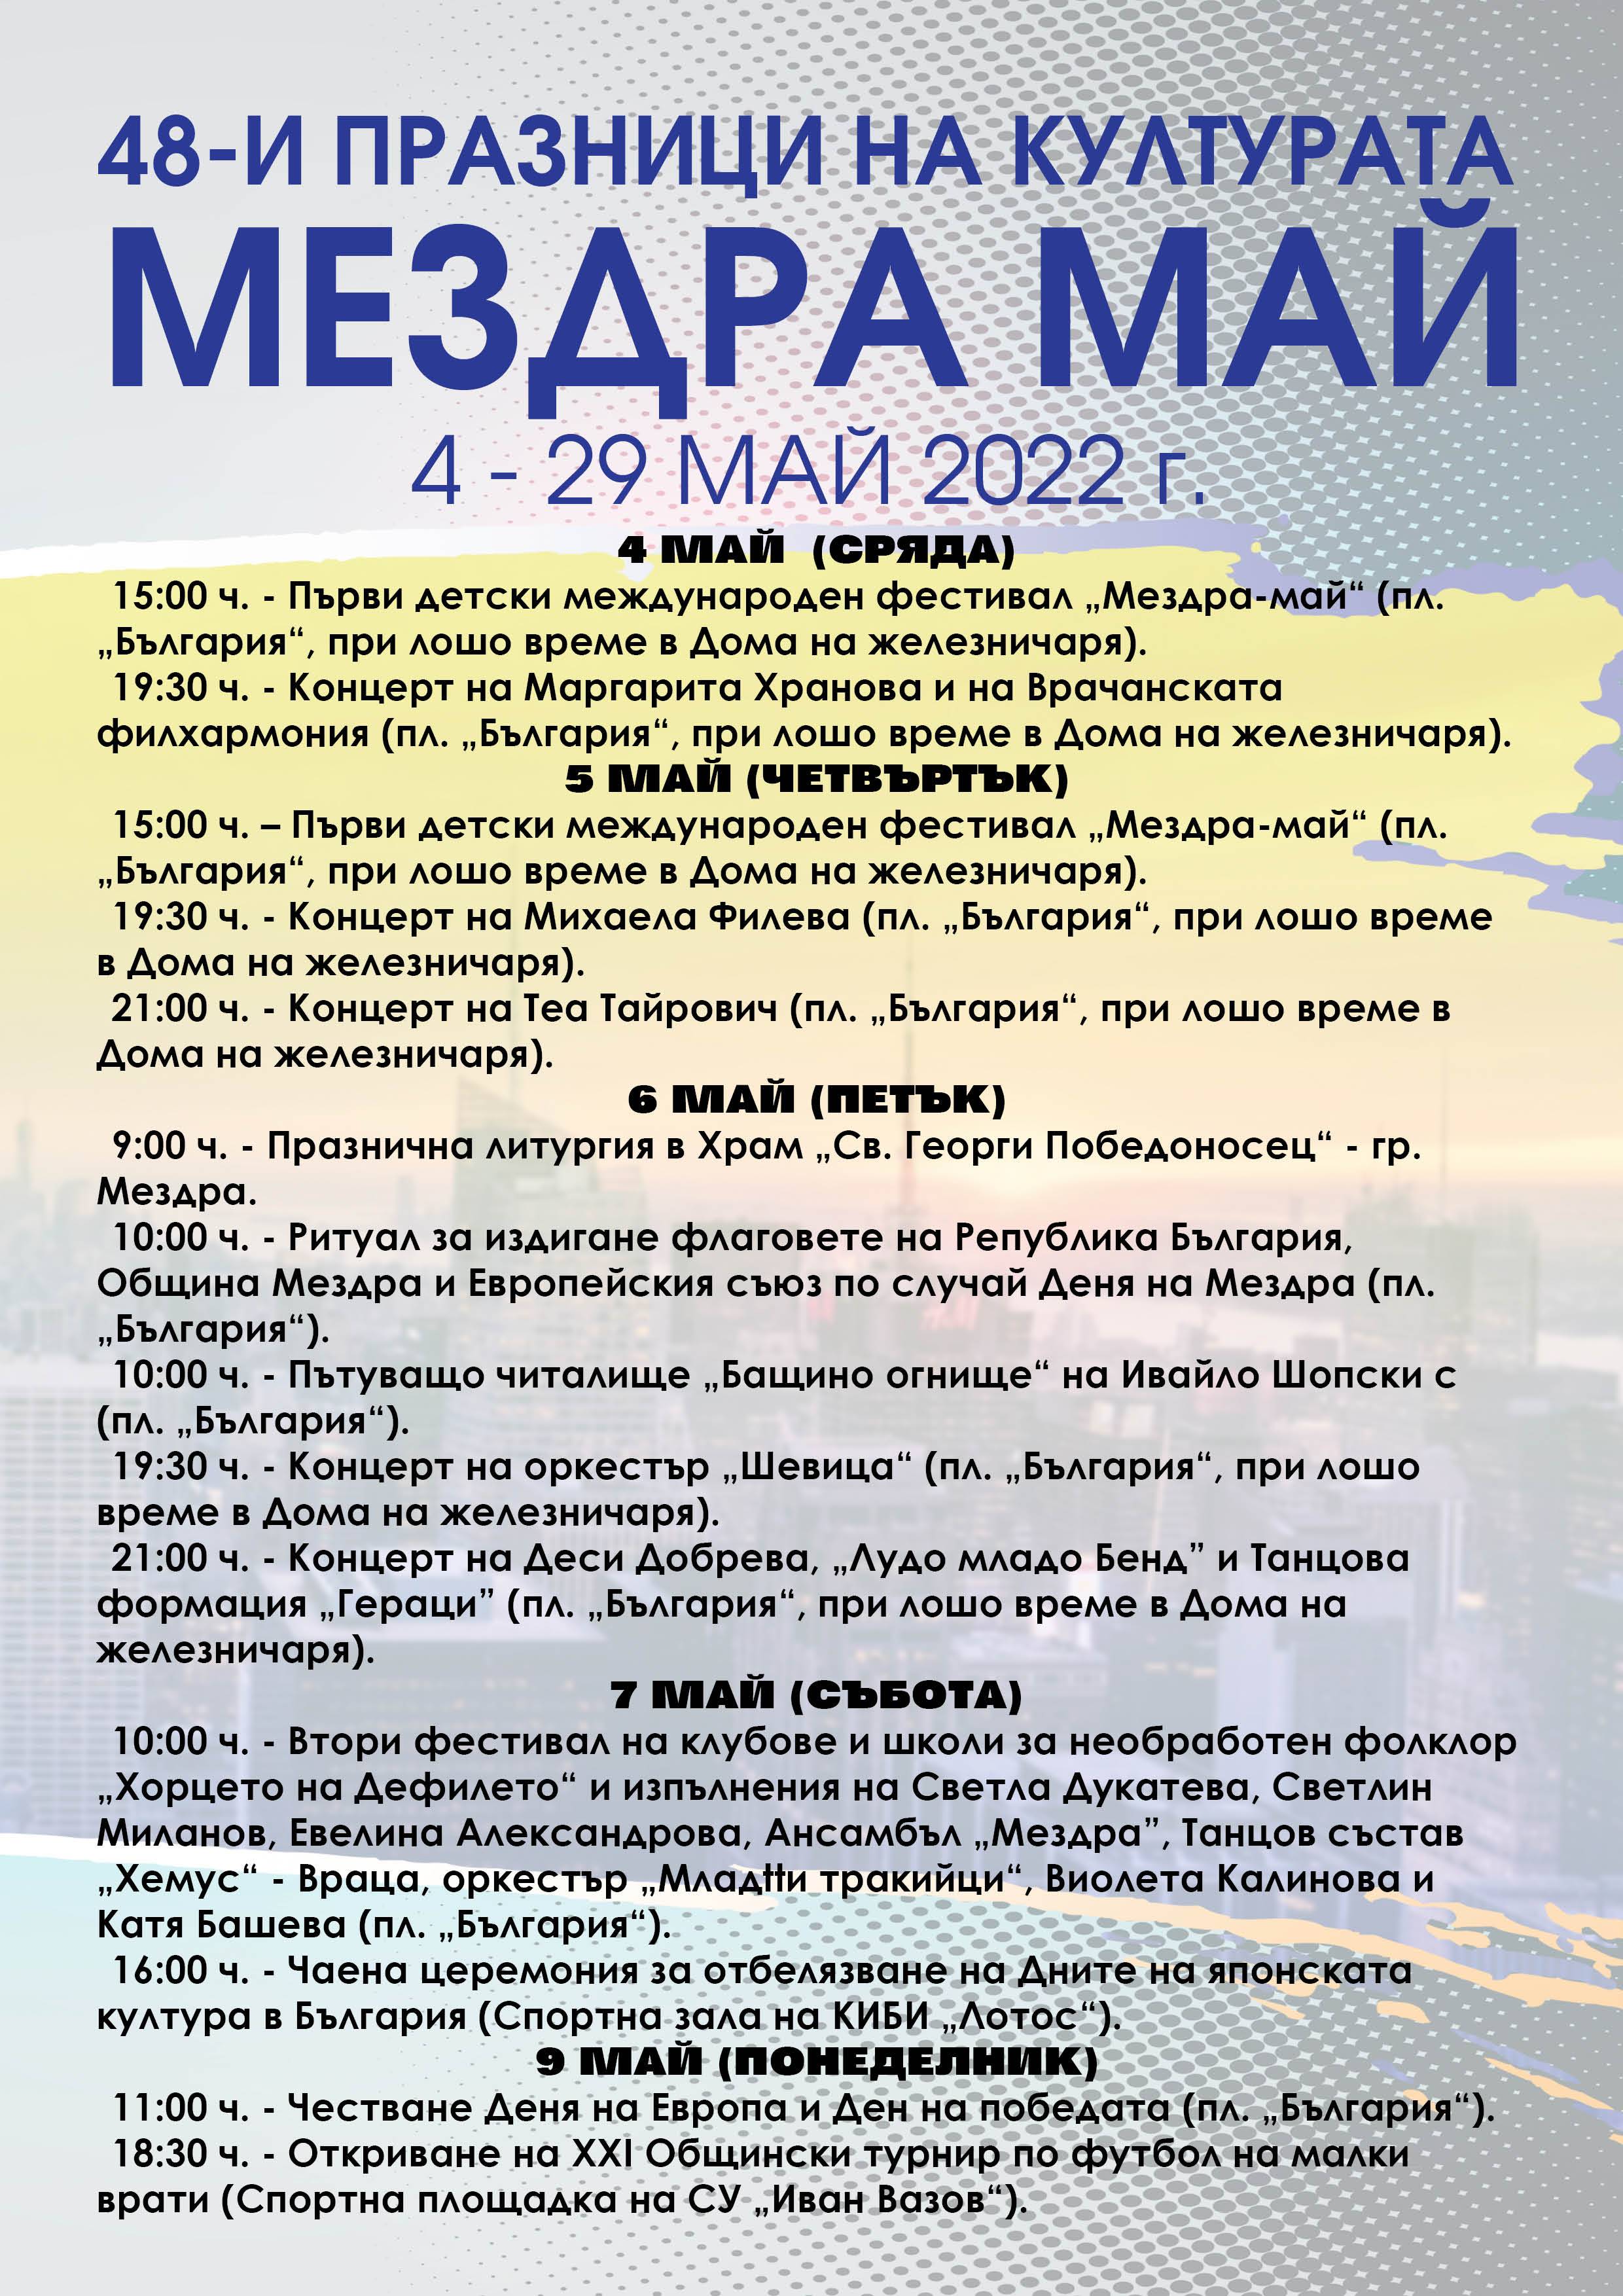 Празници на културата 2022 в община Мездра 